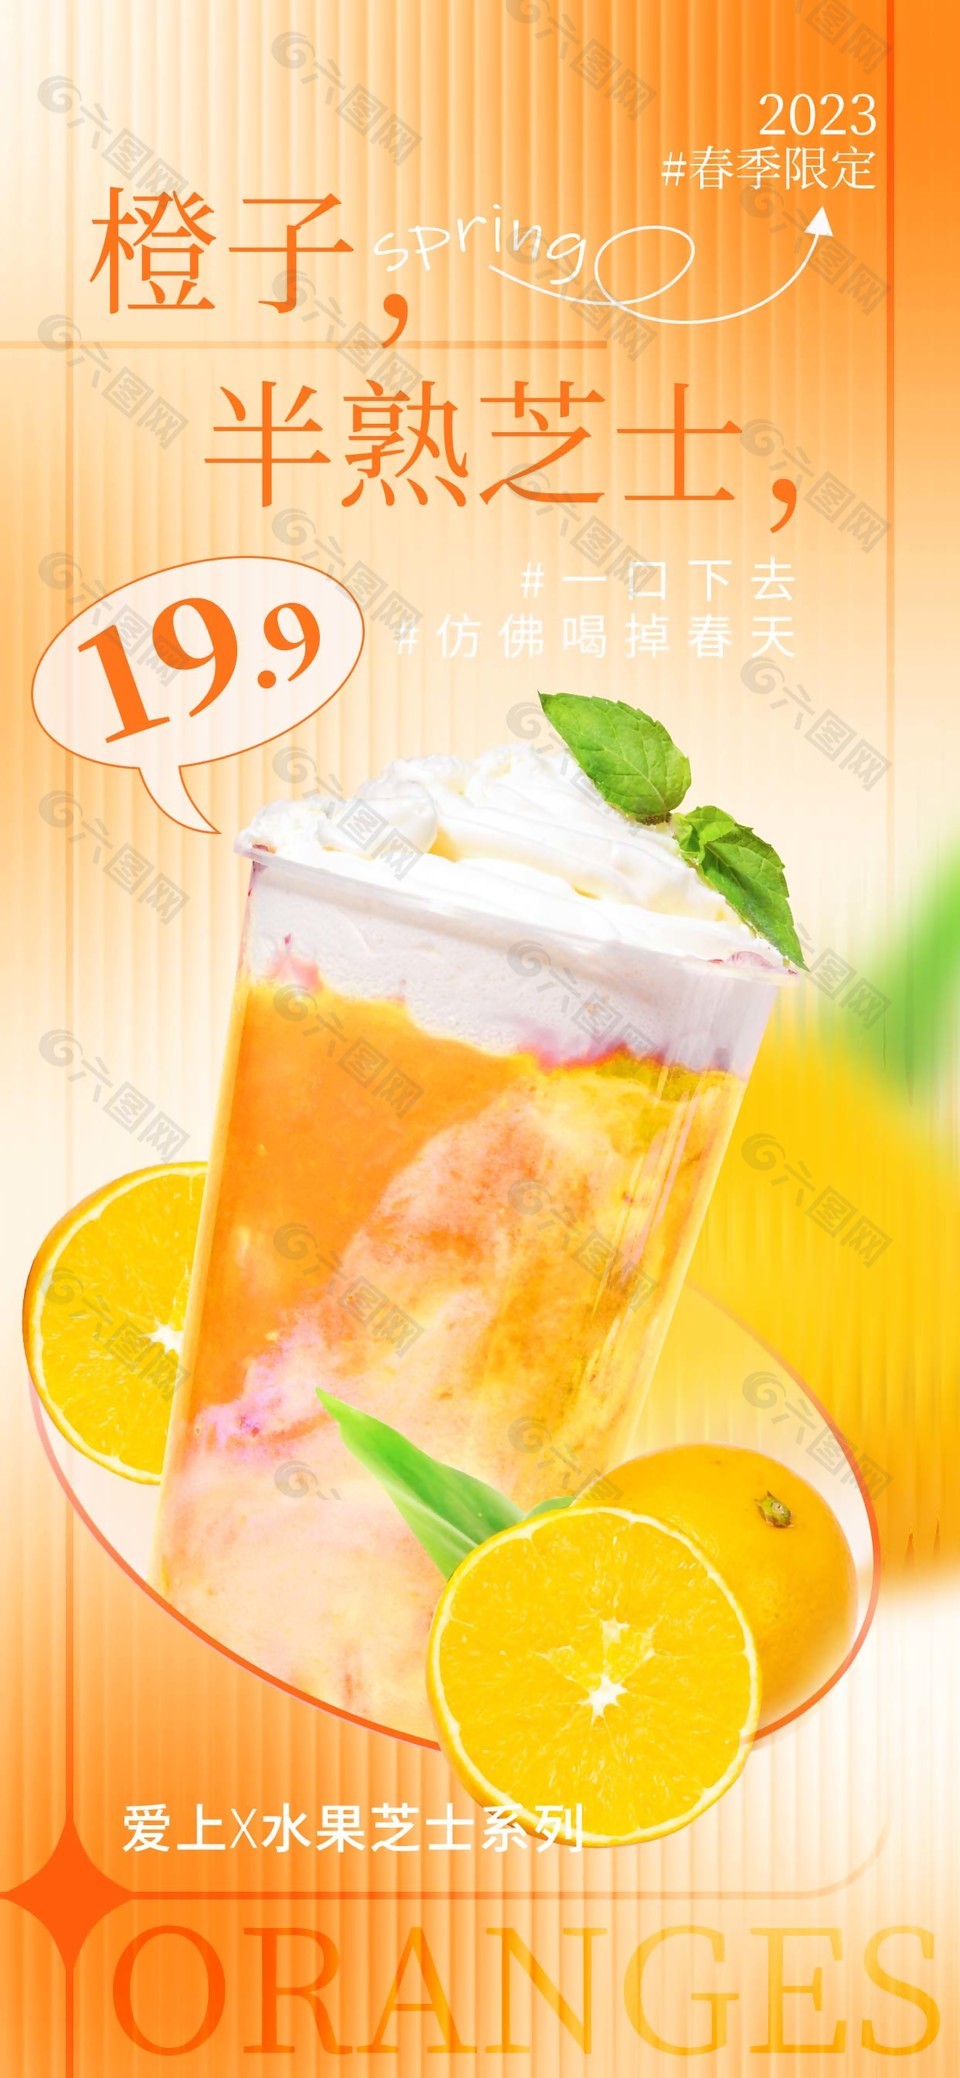 限定橙子芝士奶茶海报设计